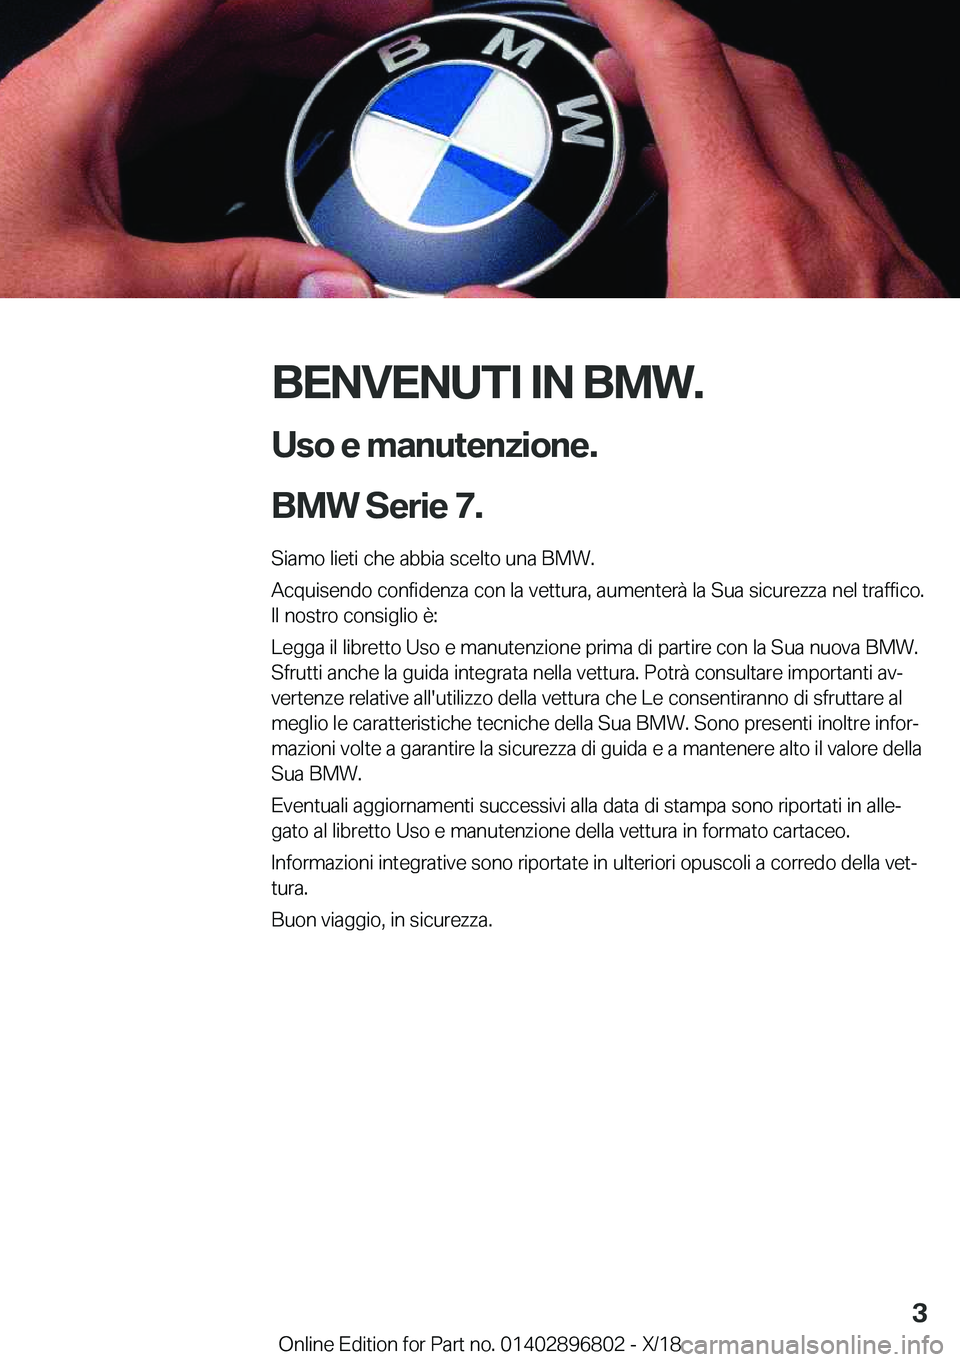 BMW 7 SERIES 2019  Libretti Di Uso E manutenzione (in Italian) �B�E�N�V�E�N�U�T�I��I�N��B�M�W�.�U�s�o��e��m�a�n�u�t�e�n�z�i�o�n�e�.
�B�M�W��S�e�r�i�e��7�.
�S�i�a�m�o��l�i�e�t�i��c�h�e��a�b�b�i�a��s�c�e�l�t�o��u�n�a��B�M�W�. �A�c�q�u�i�s�e�n�d�o��c�o�